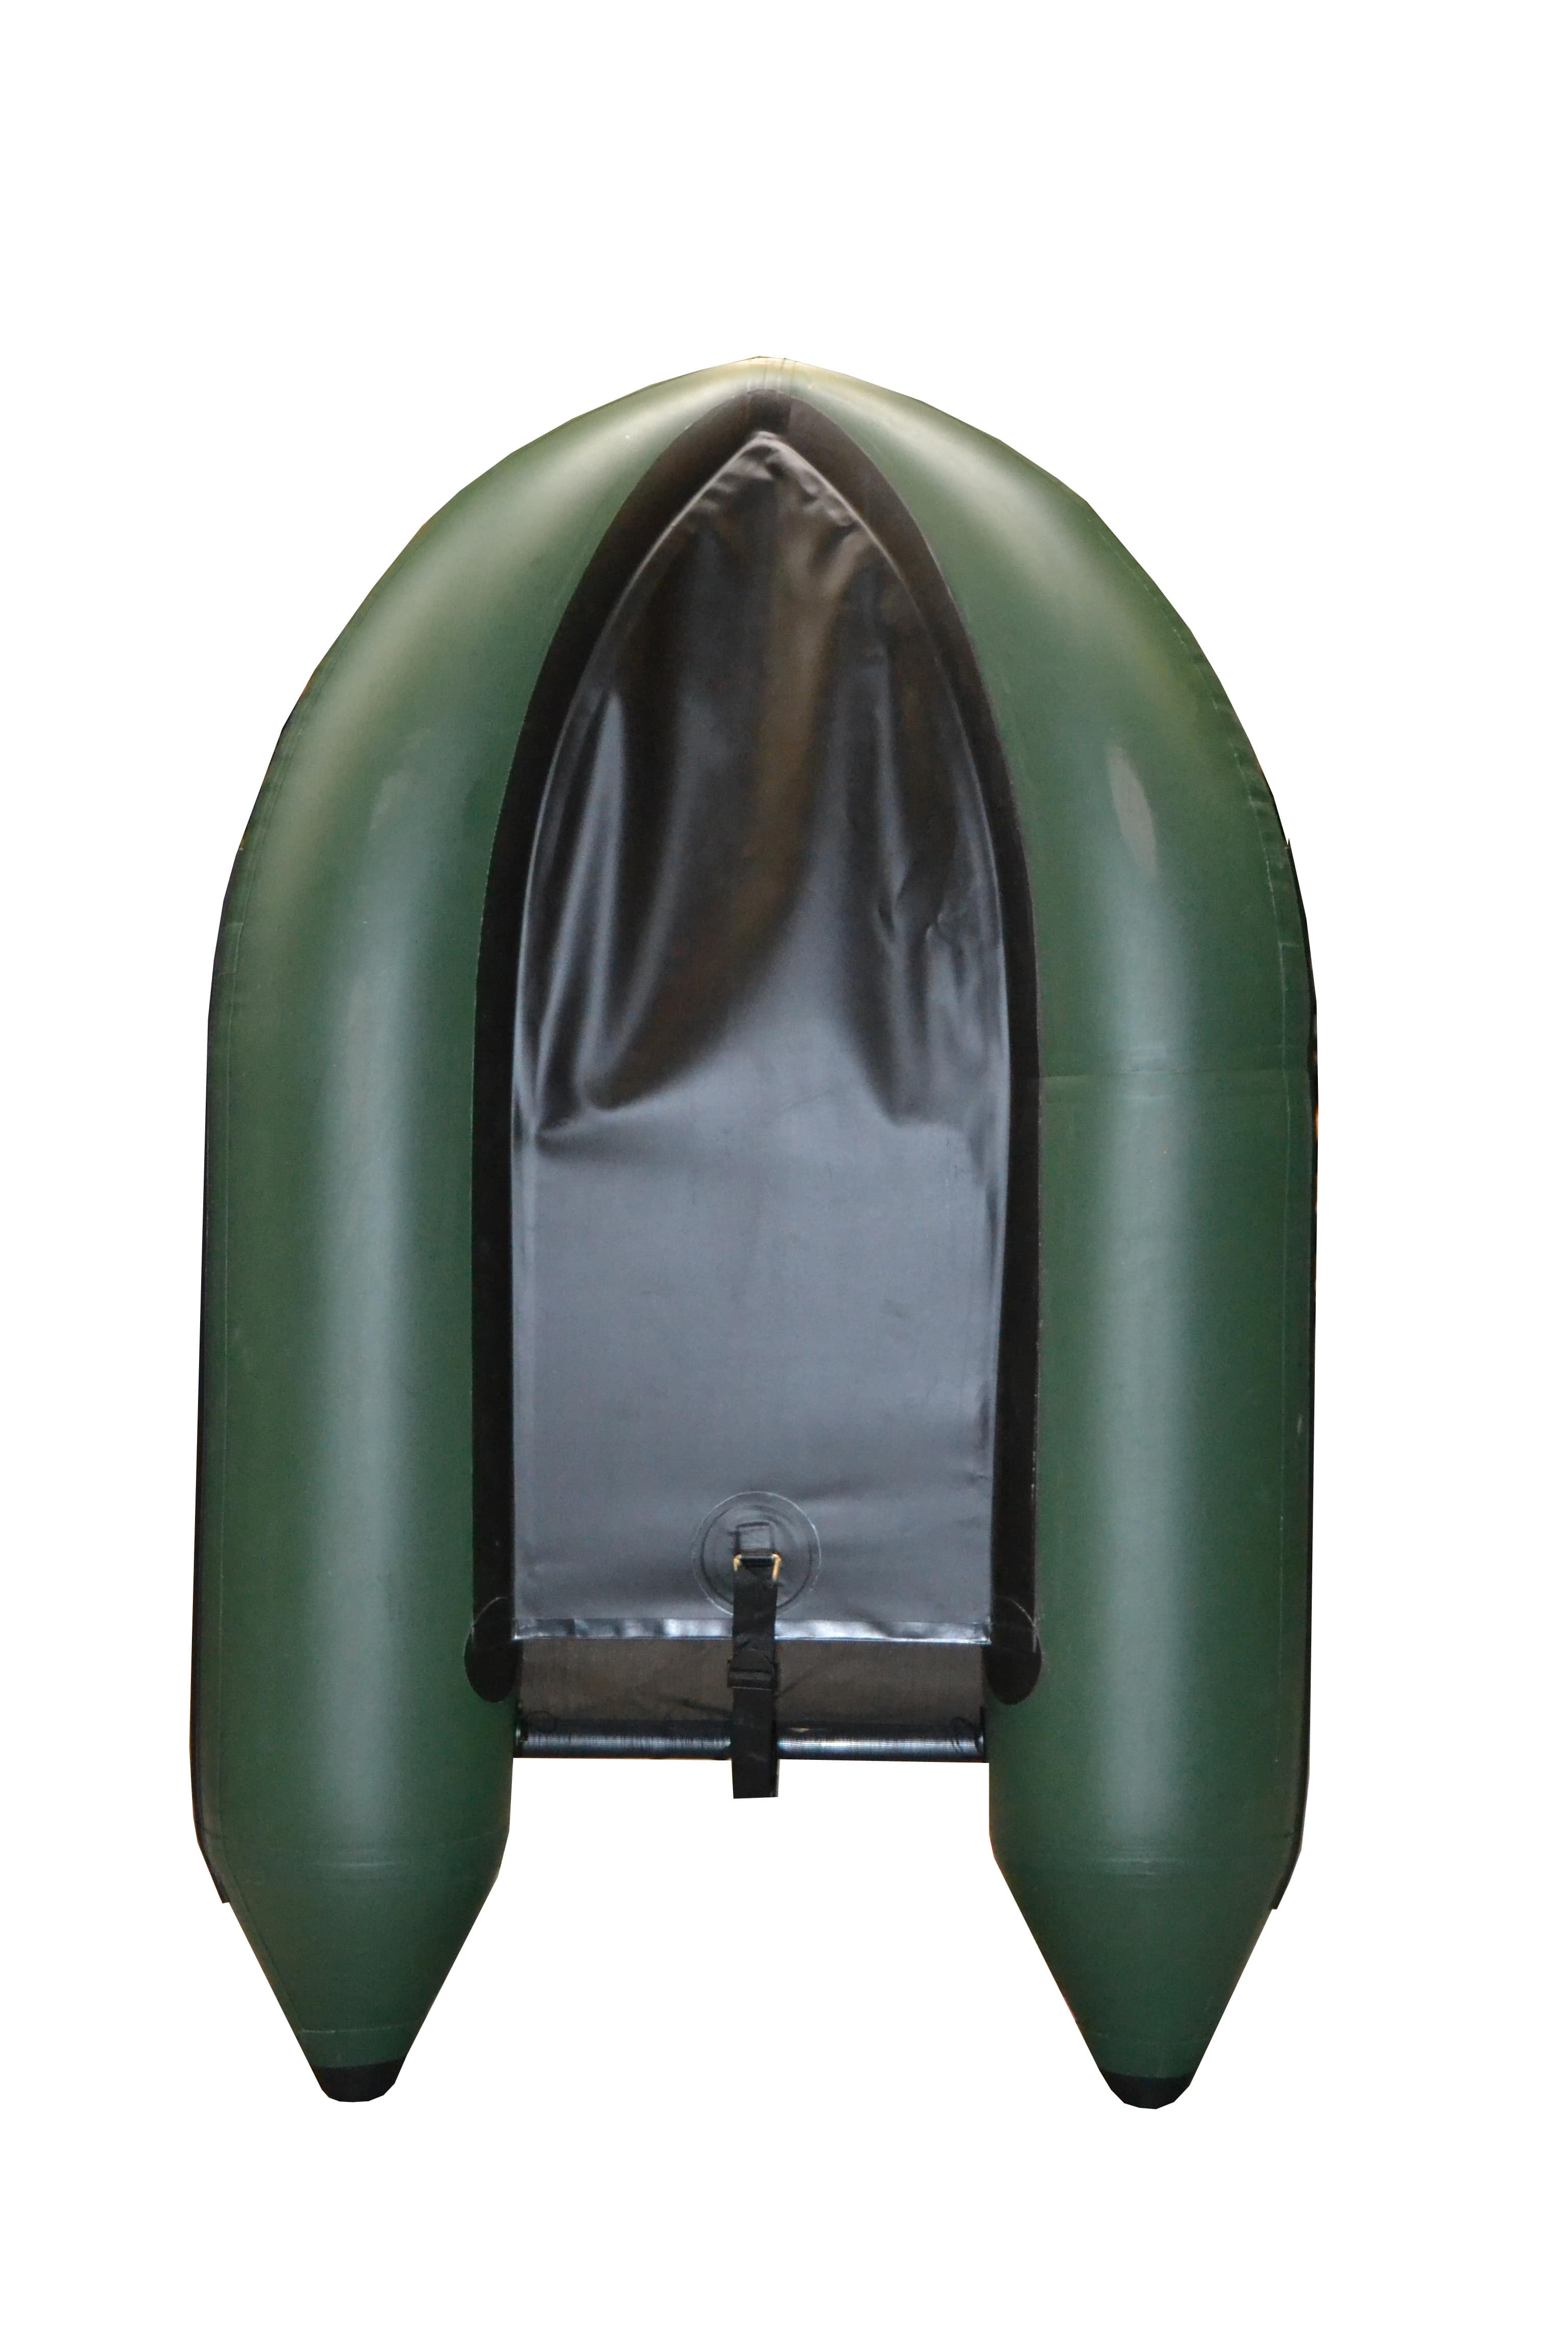 Float tube Seven Bass - Hybrid Line - ARMADA - Vert (Verde)